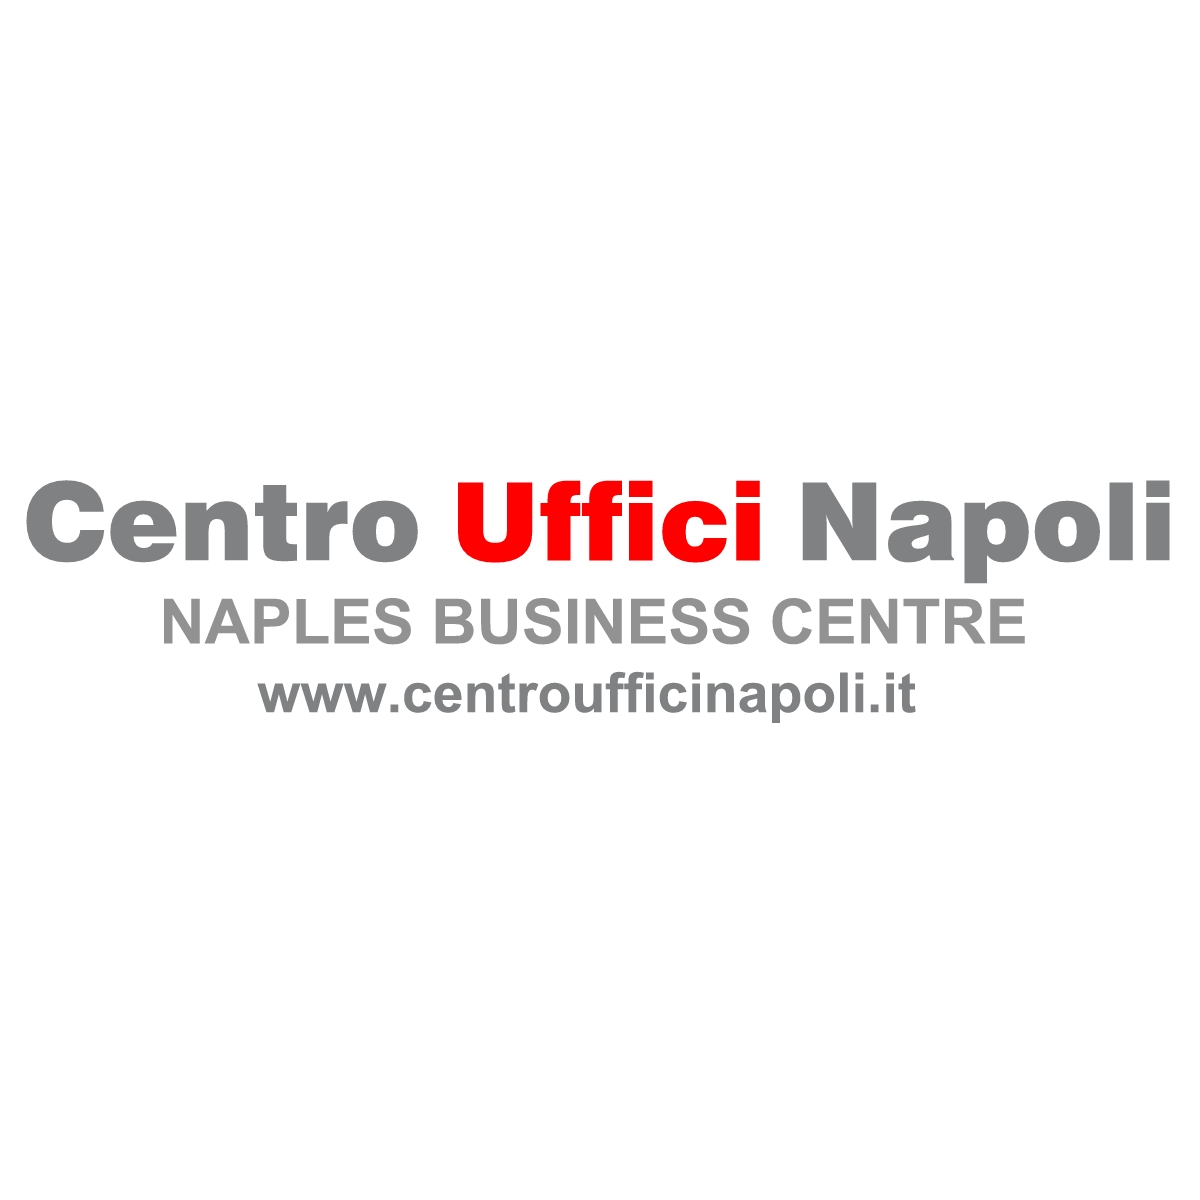 Centro Uffici Napoli